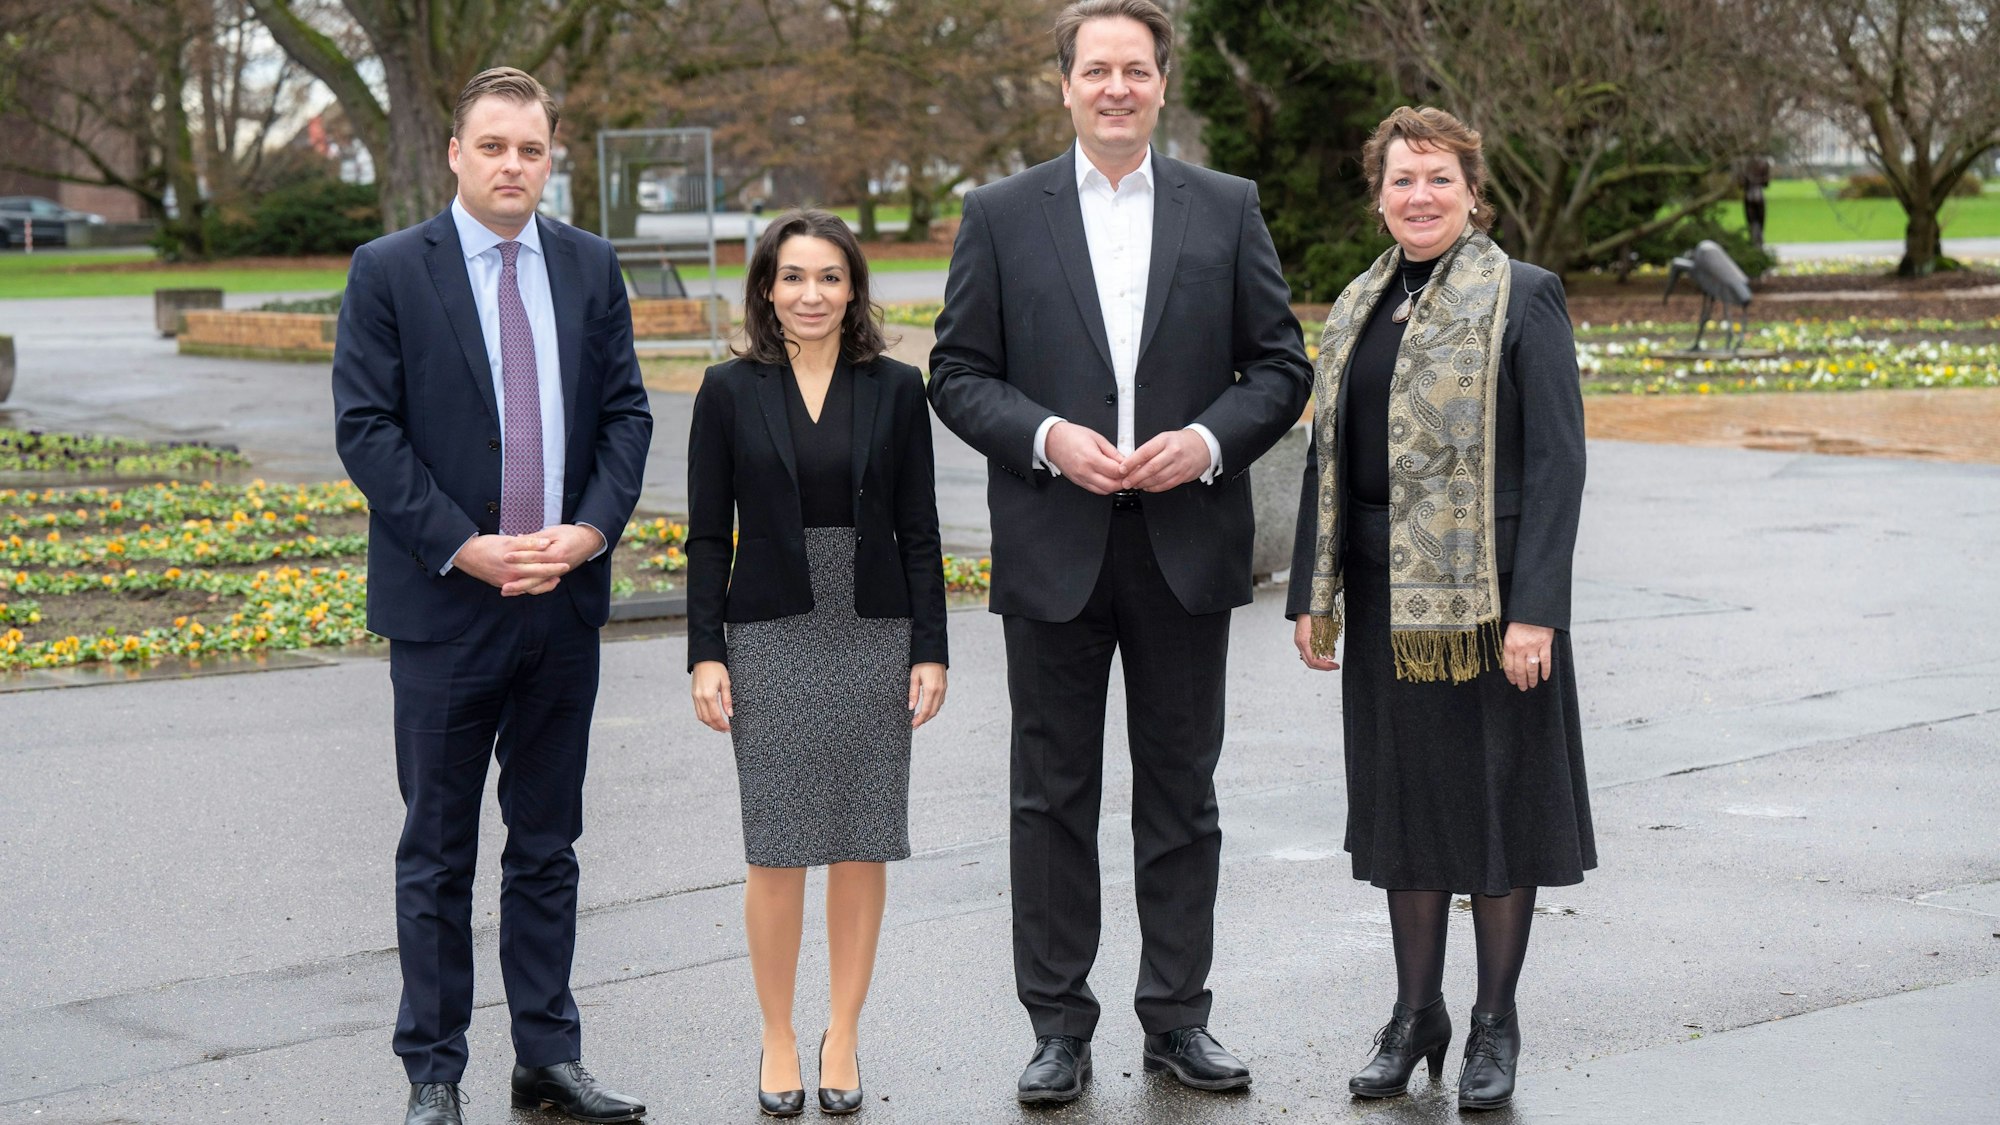 Auf dem Bild stehen vier Menschn im Rheinprk, die für den neuen Kölner CDU-Parteivorstand kandidieren.